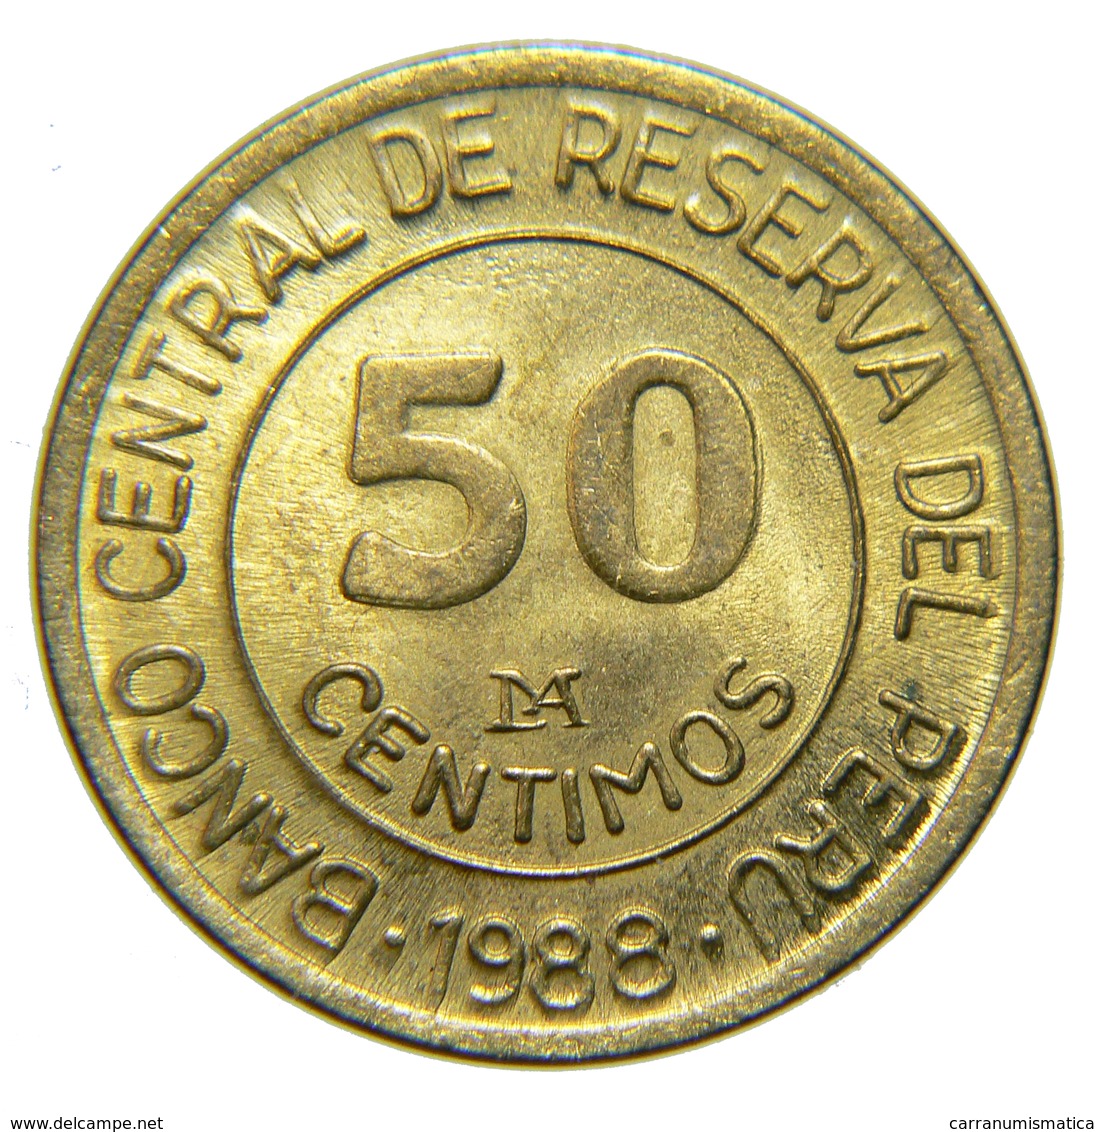 [NC] PERU - 50 CENTIMOS 1988 - Perú